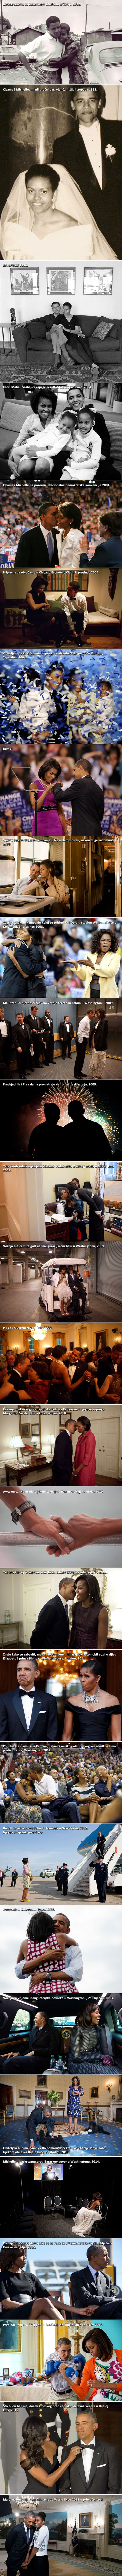 Ljubavna priča Baracka i Michelle Obame u slikama